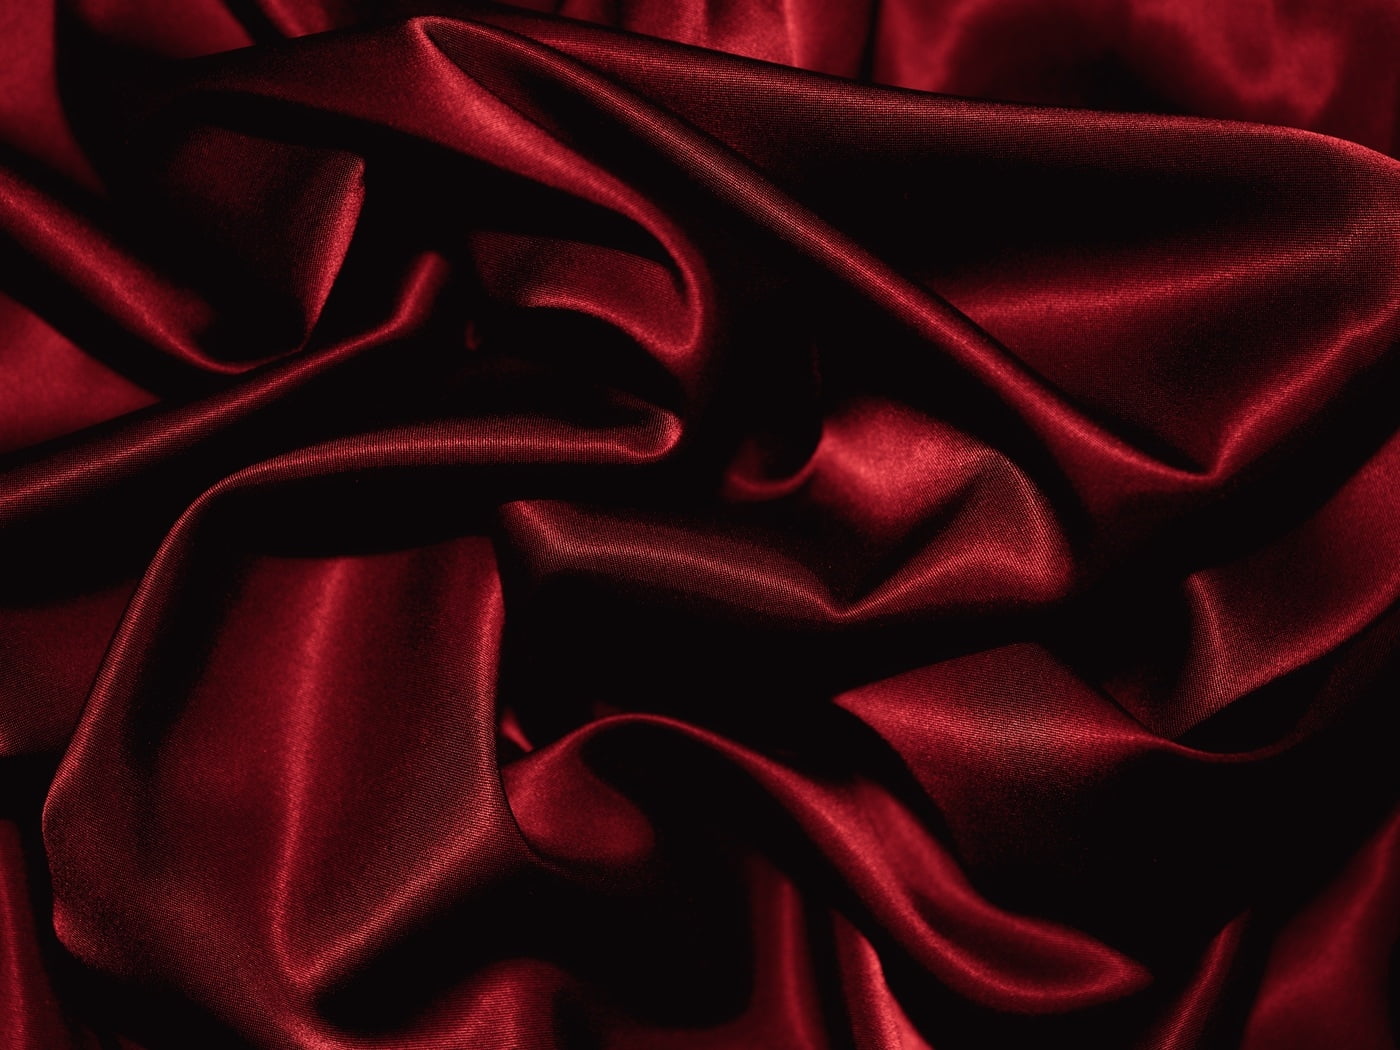 schwarze seidentapete,rot,die seide,satin ,textil ,samt